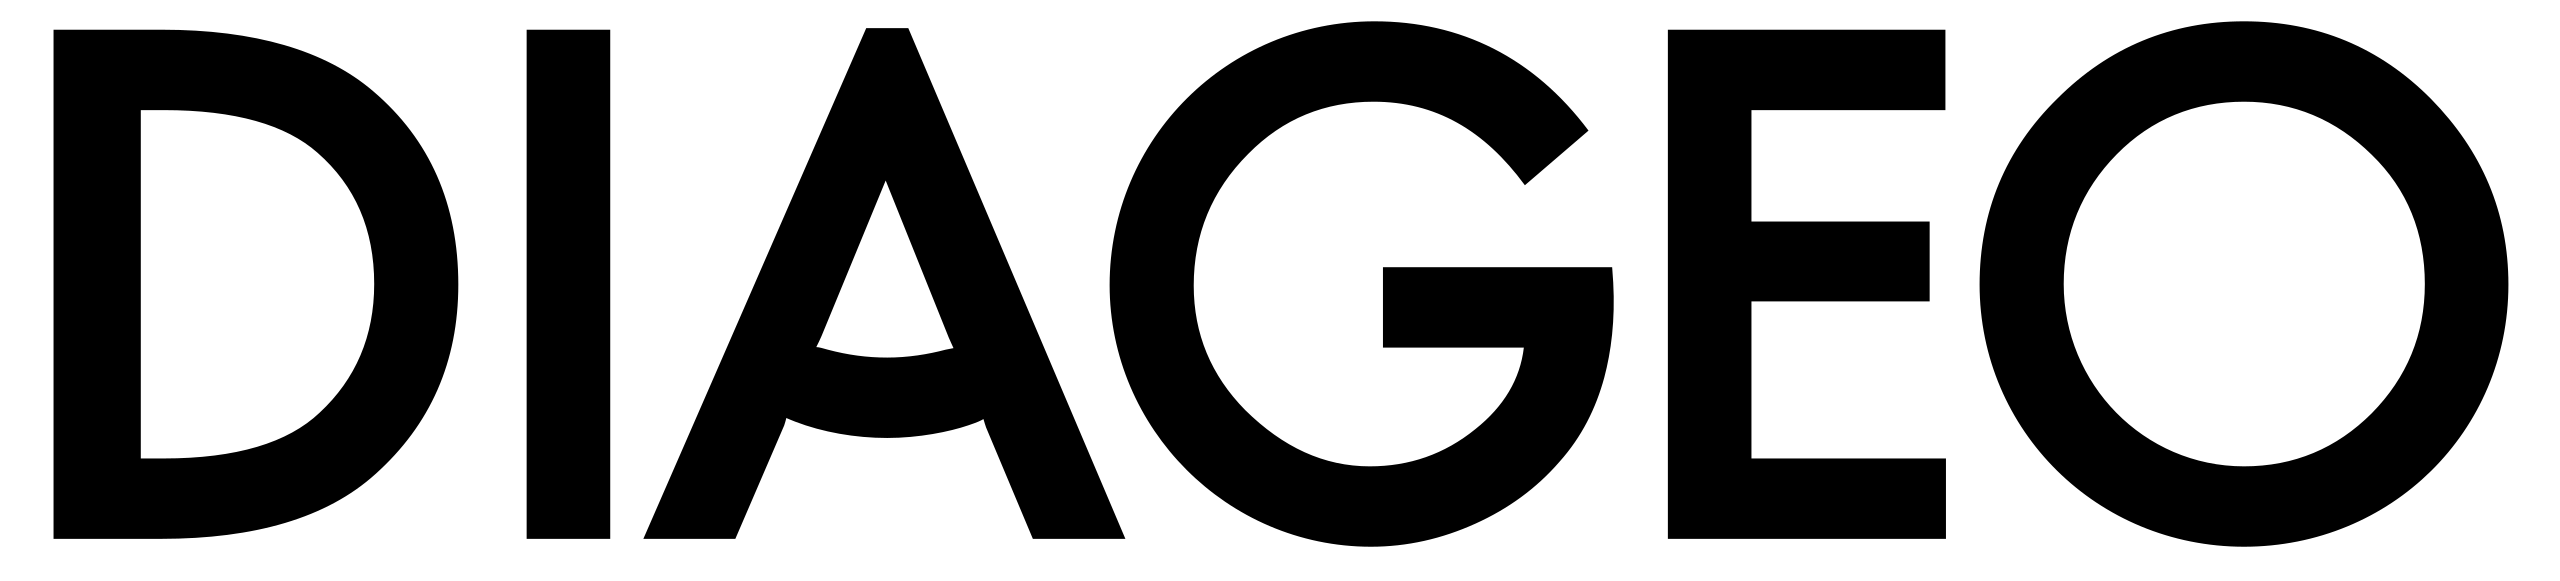 Diageo logo in black